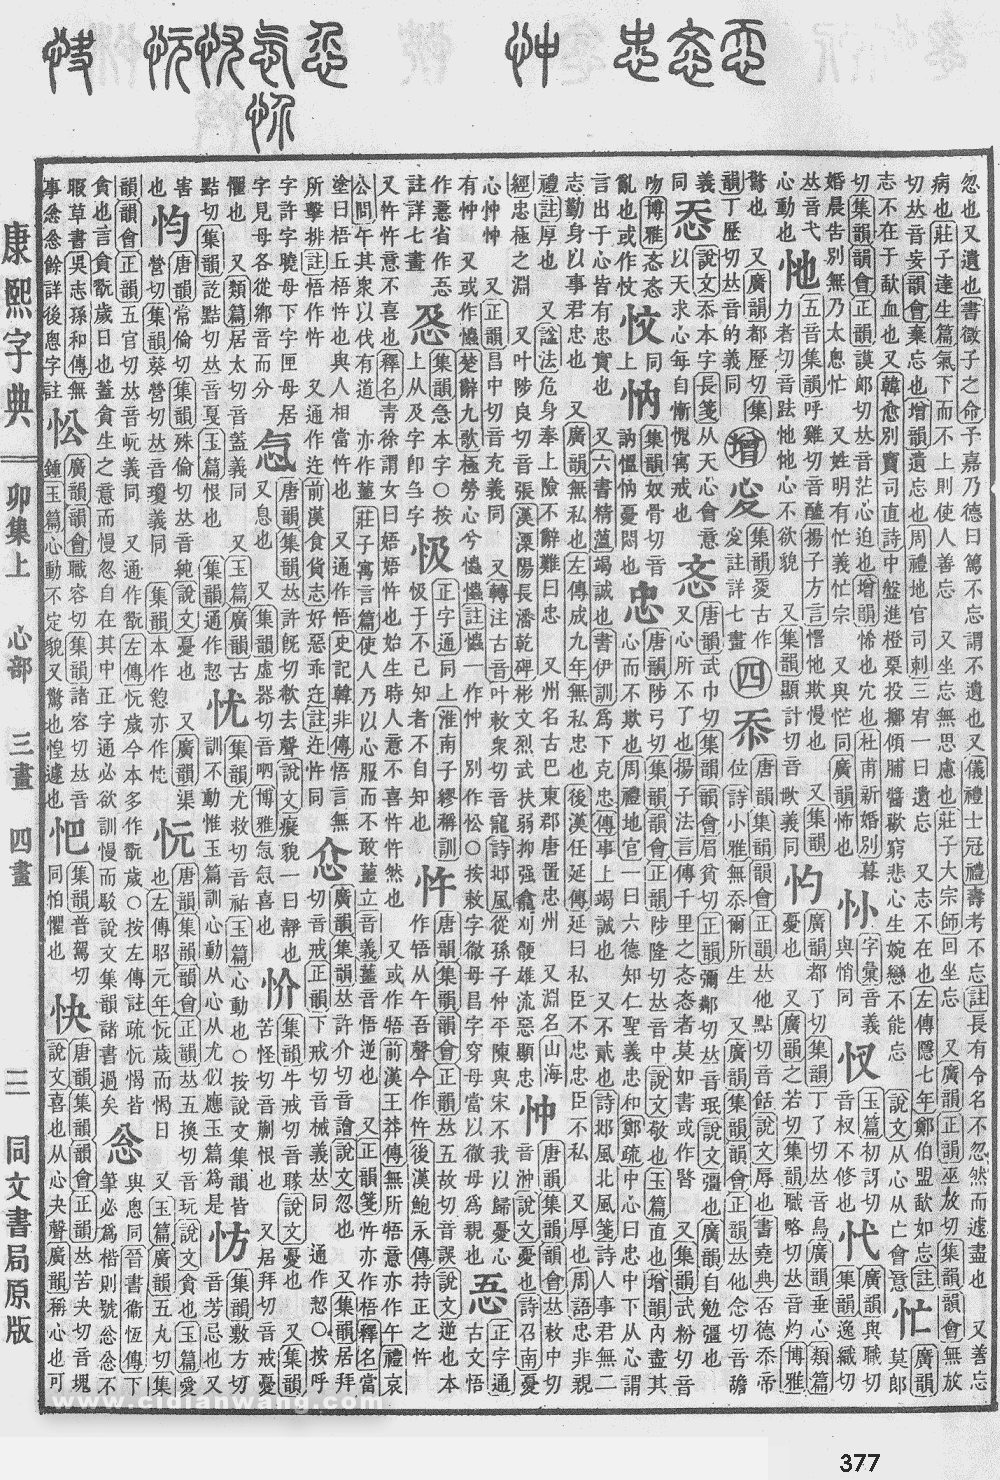 康熙字典掃描版第377頁